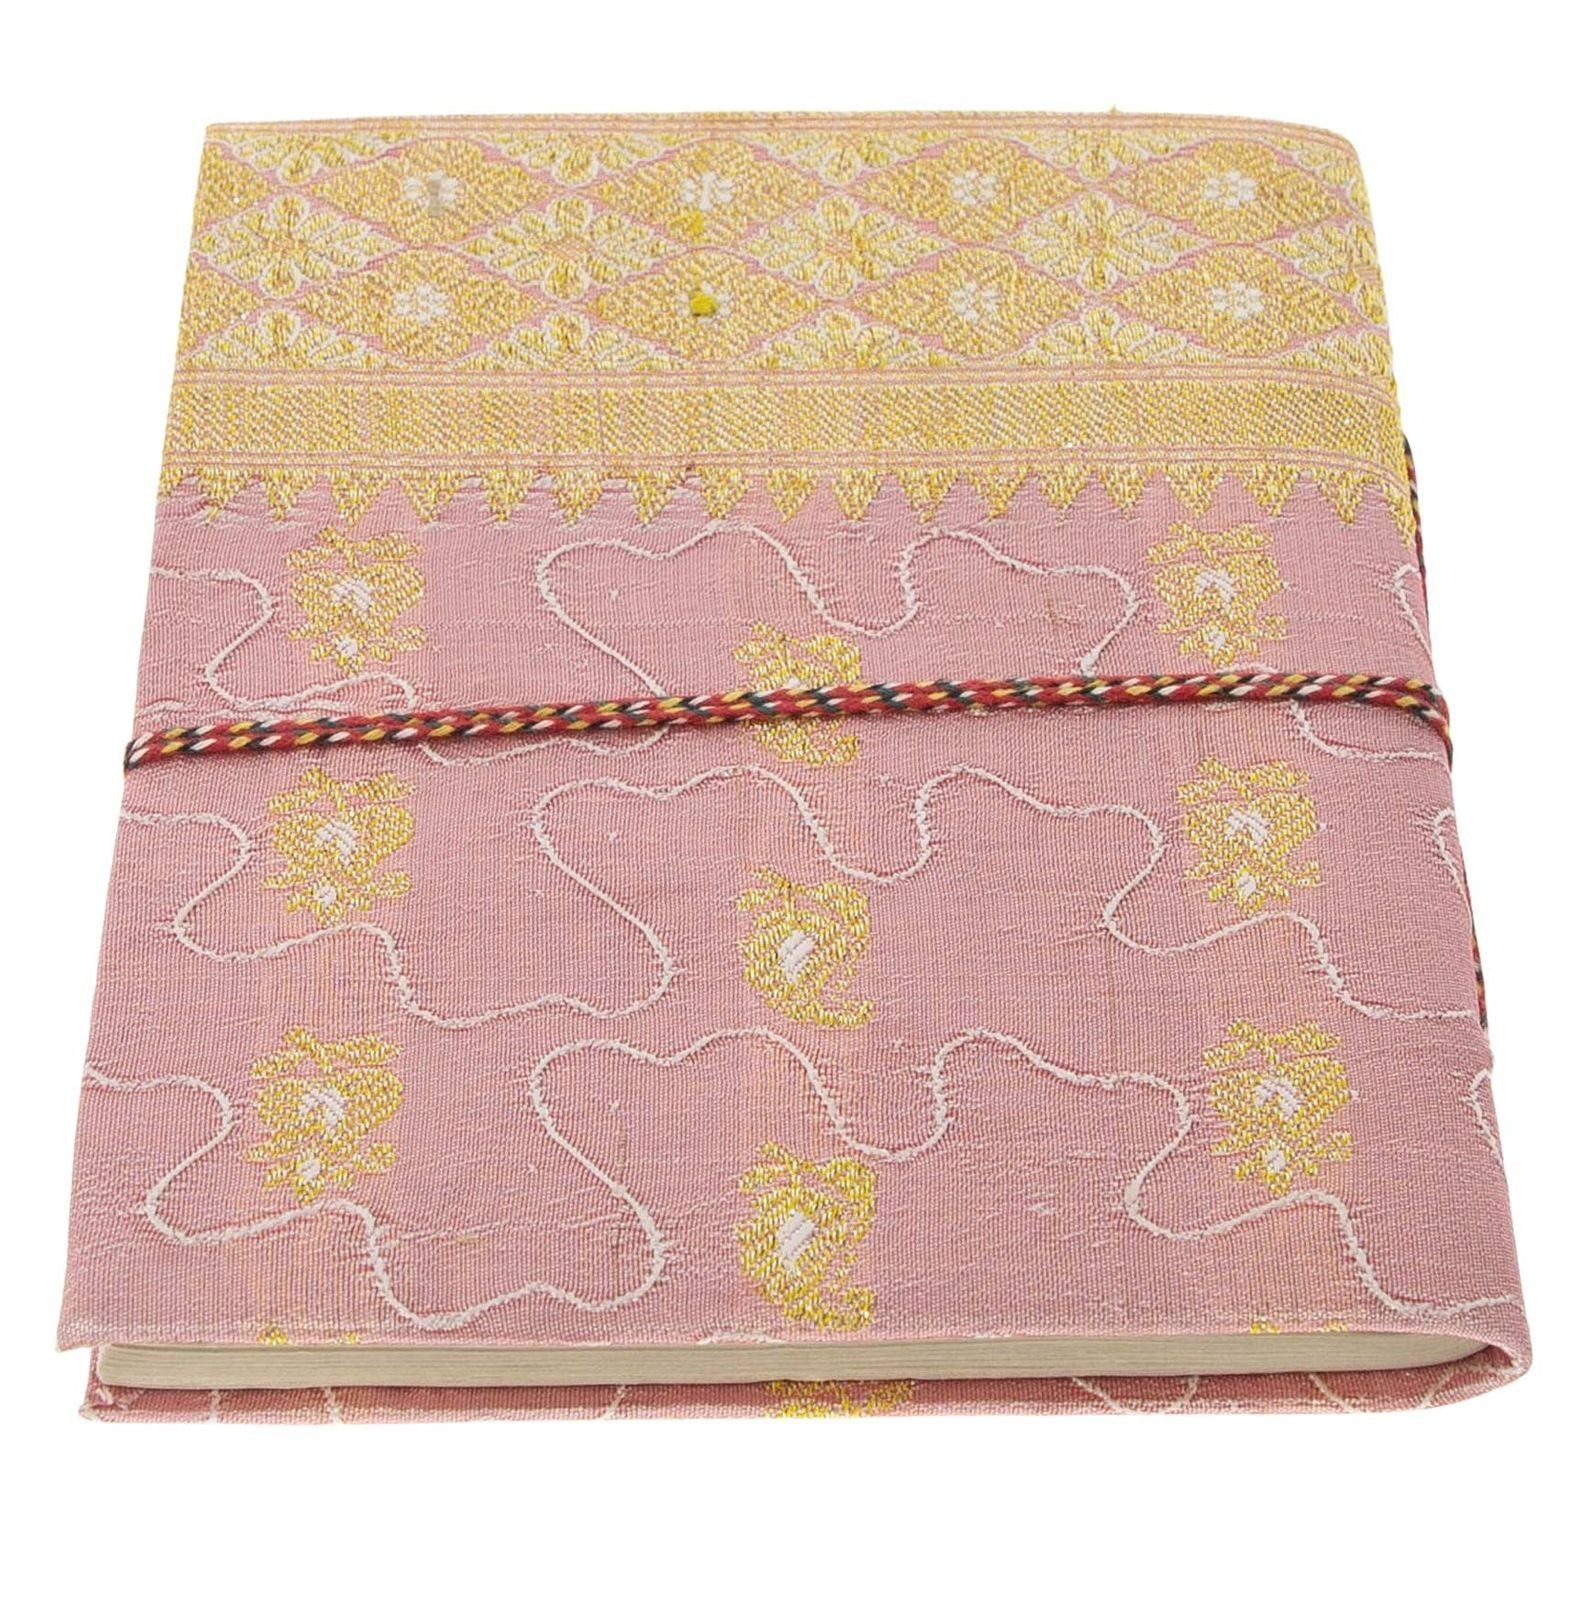 UND KUNST MAGIE Tagebuch Tagebuch 10x15cm Baumwollpapier-Notizbuch Poesie Sari handgefertigt